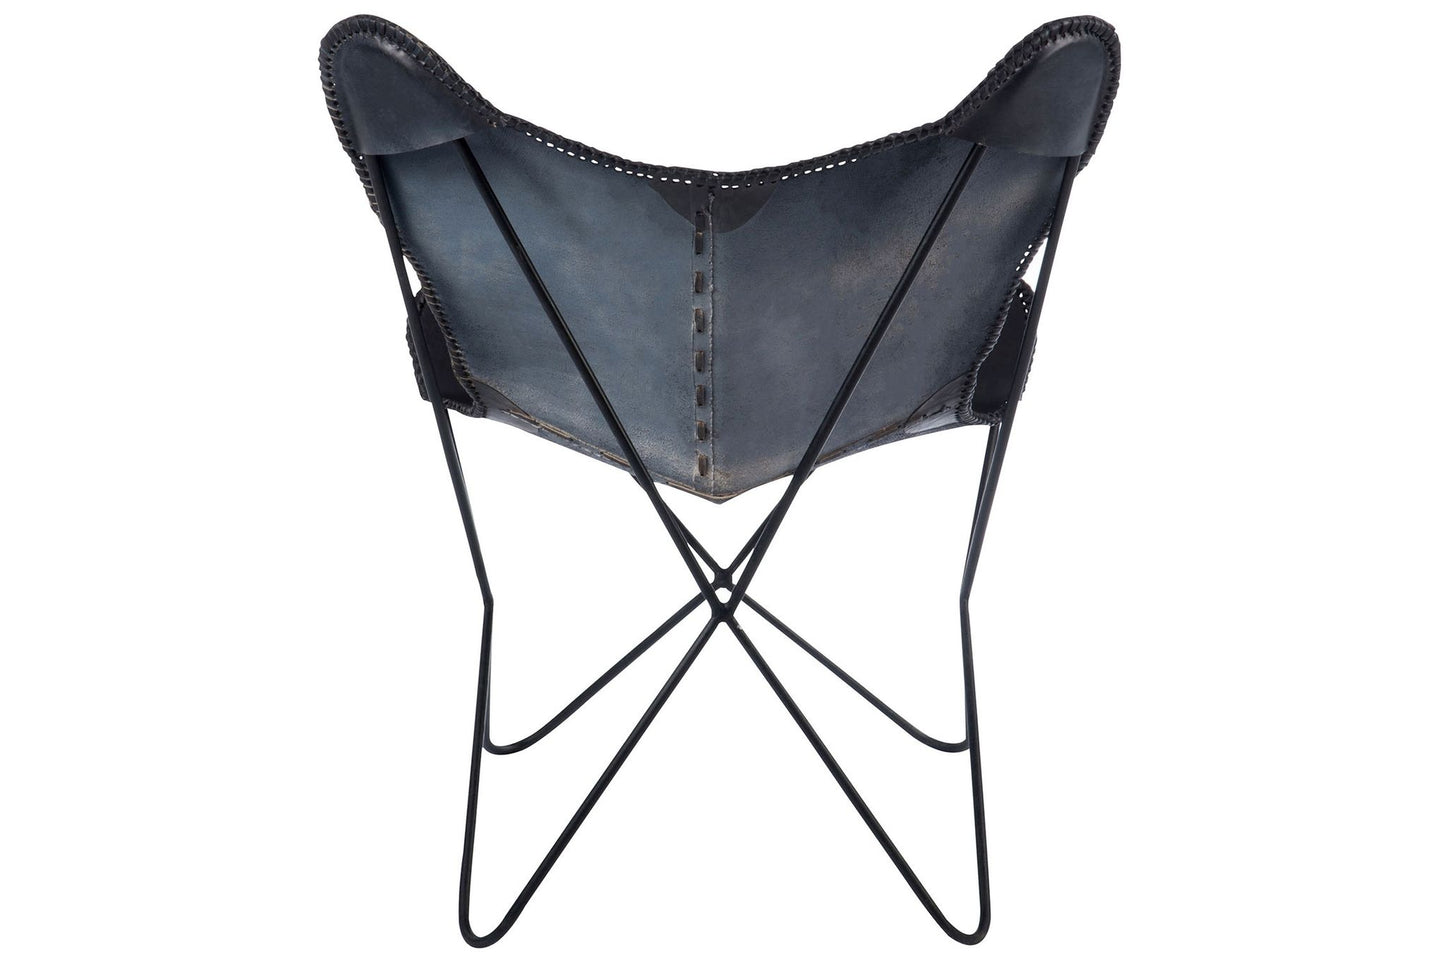 Lounge chair leath/met black